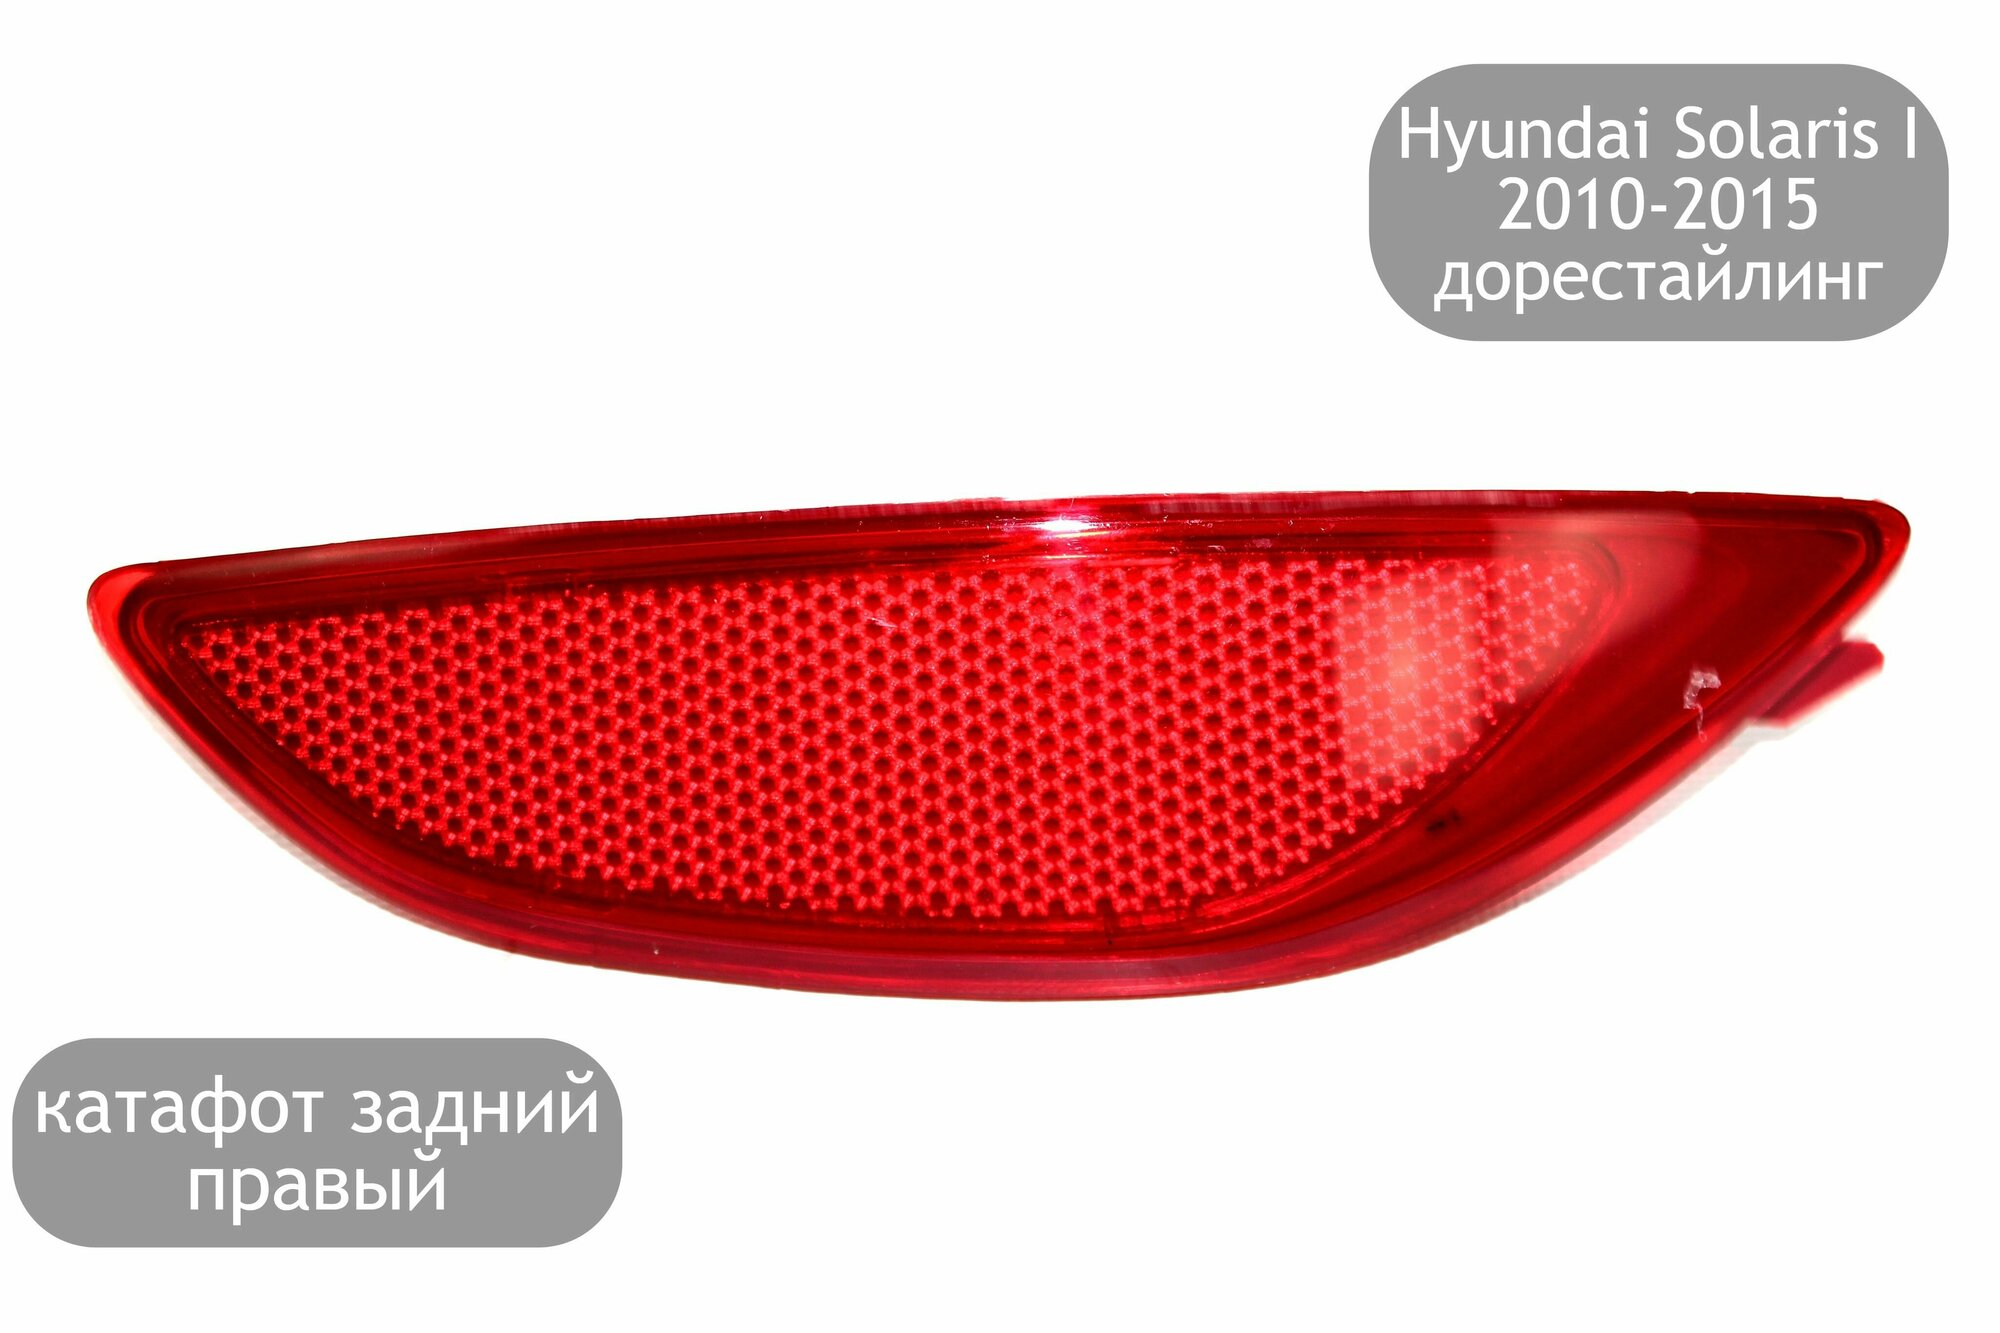 Катафот задний правый для Hyundai Solaris I 2010-2015 (дорестайлинг)